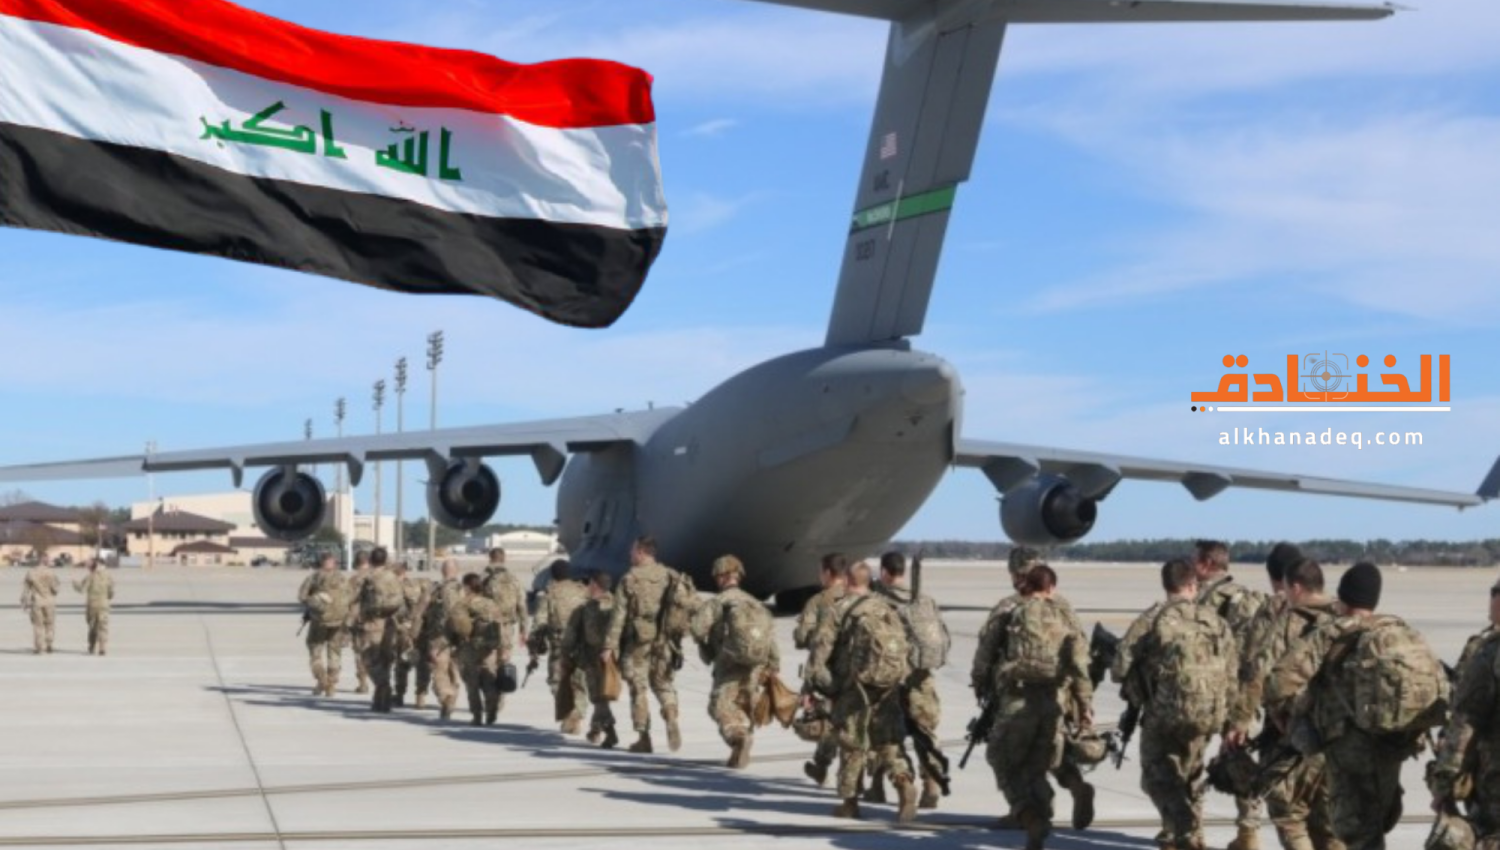 الانسحاب الأمريكي القتالي من العراق: المقاومة هي الحكم!